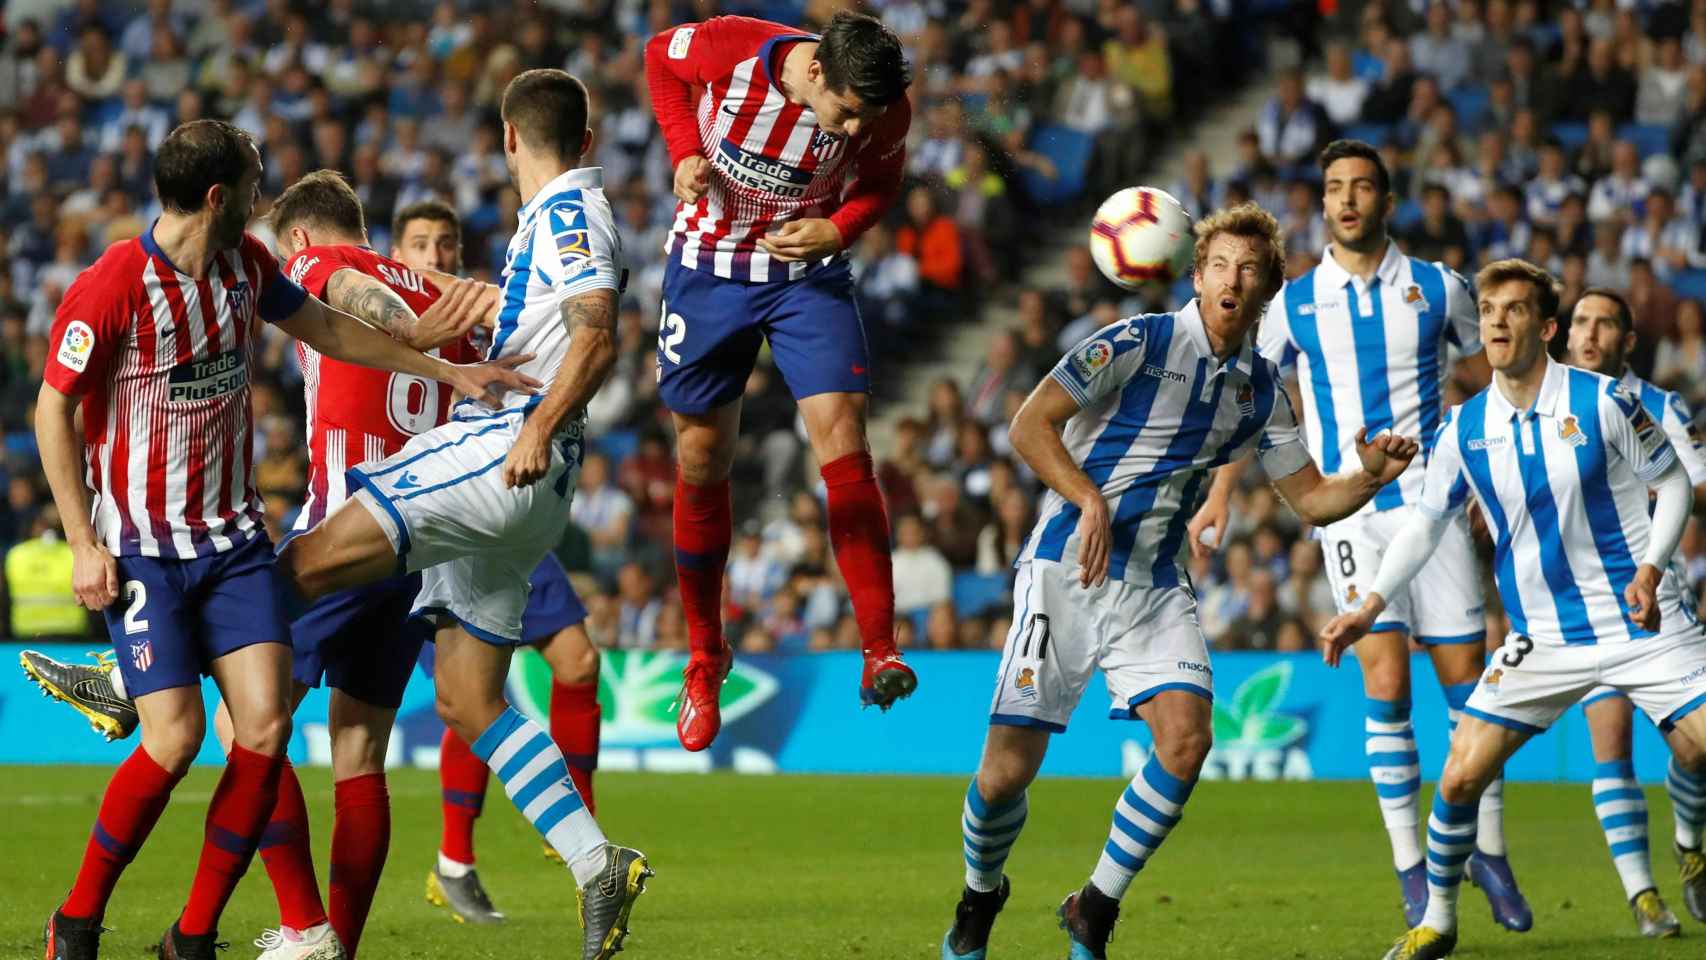 Morata remata un centro para marcar un gol en el Real Sociedad - Atlético de Madrid de La Liga.